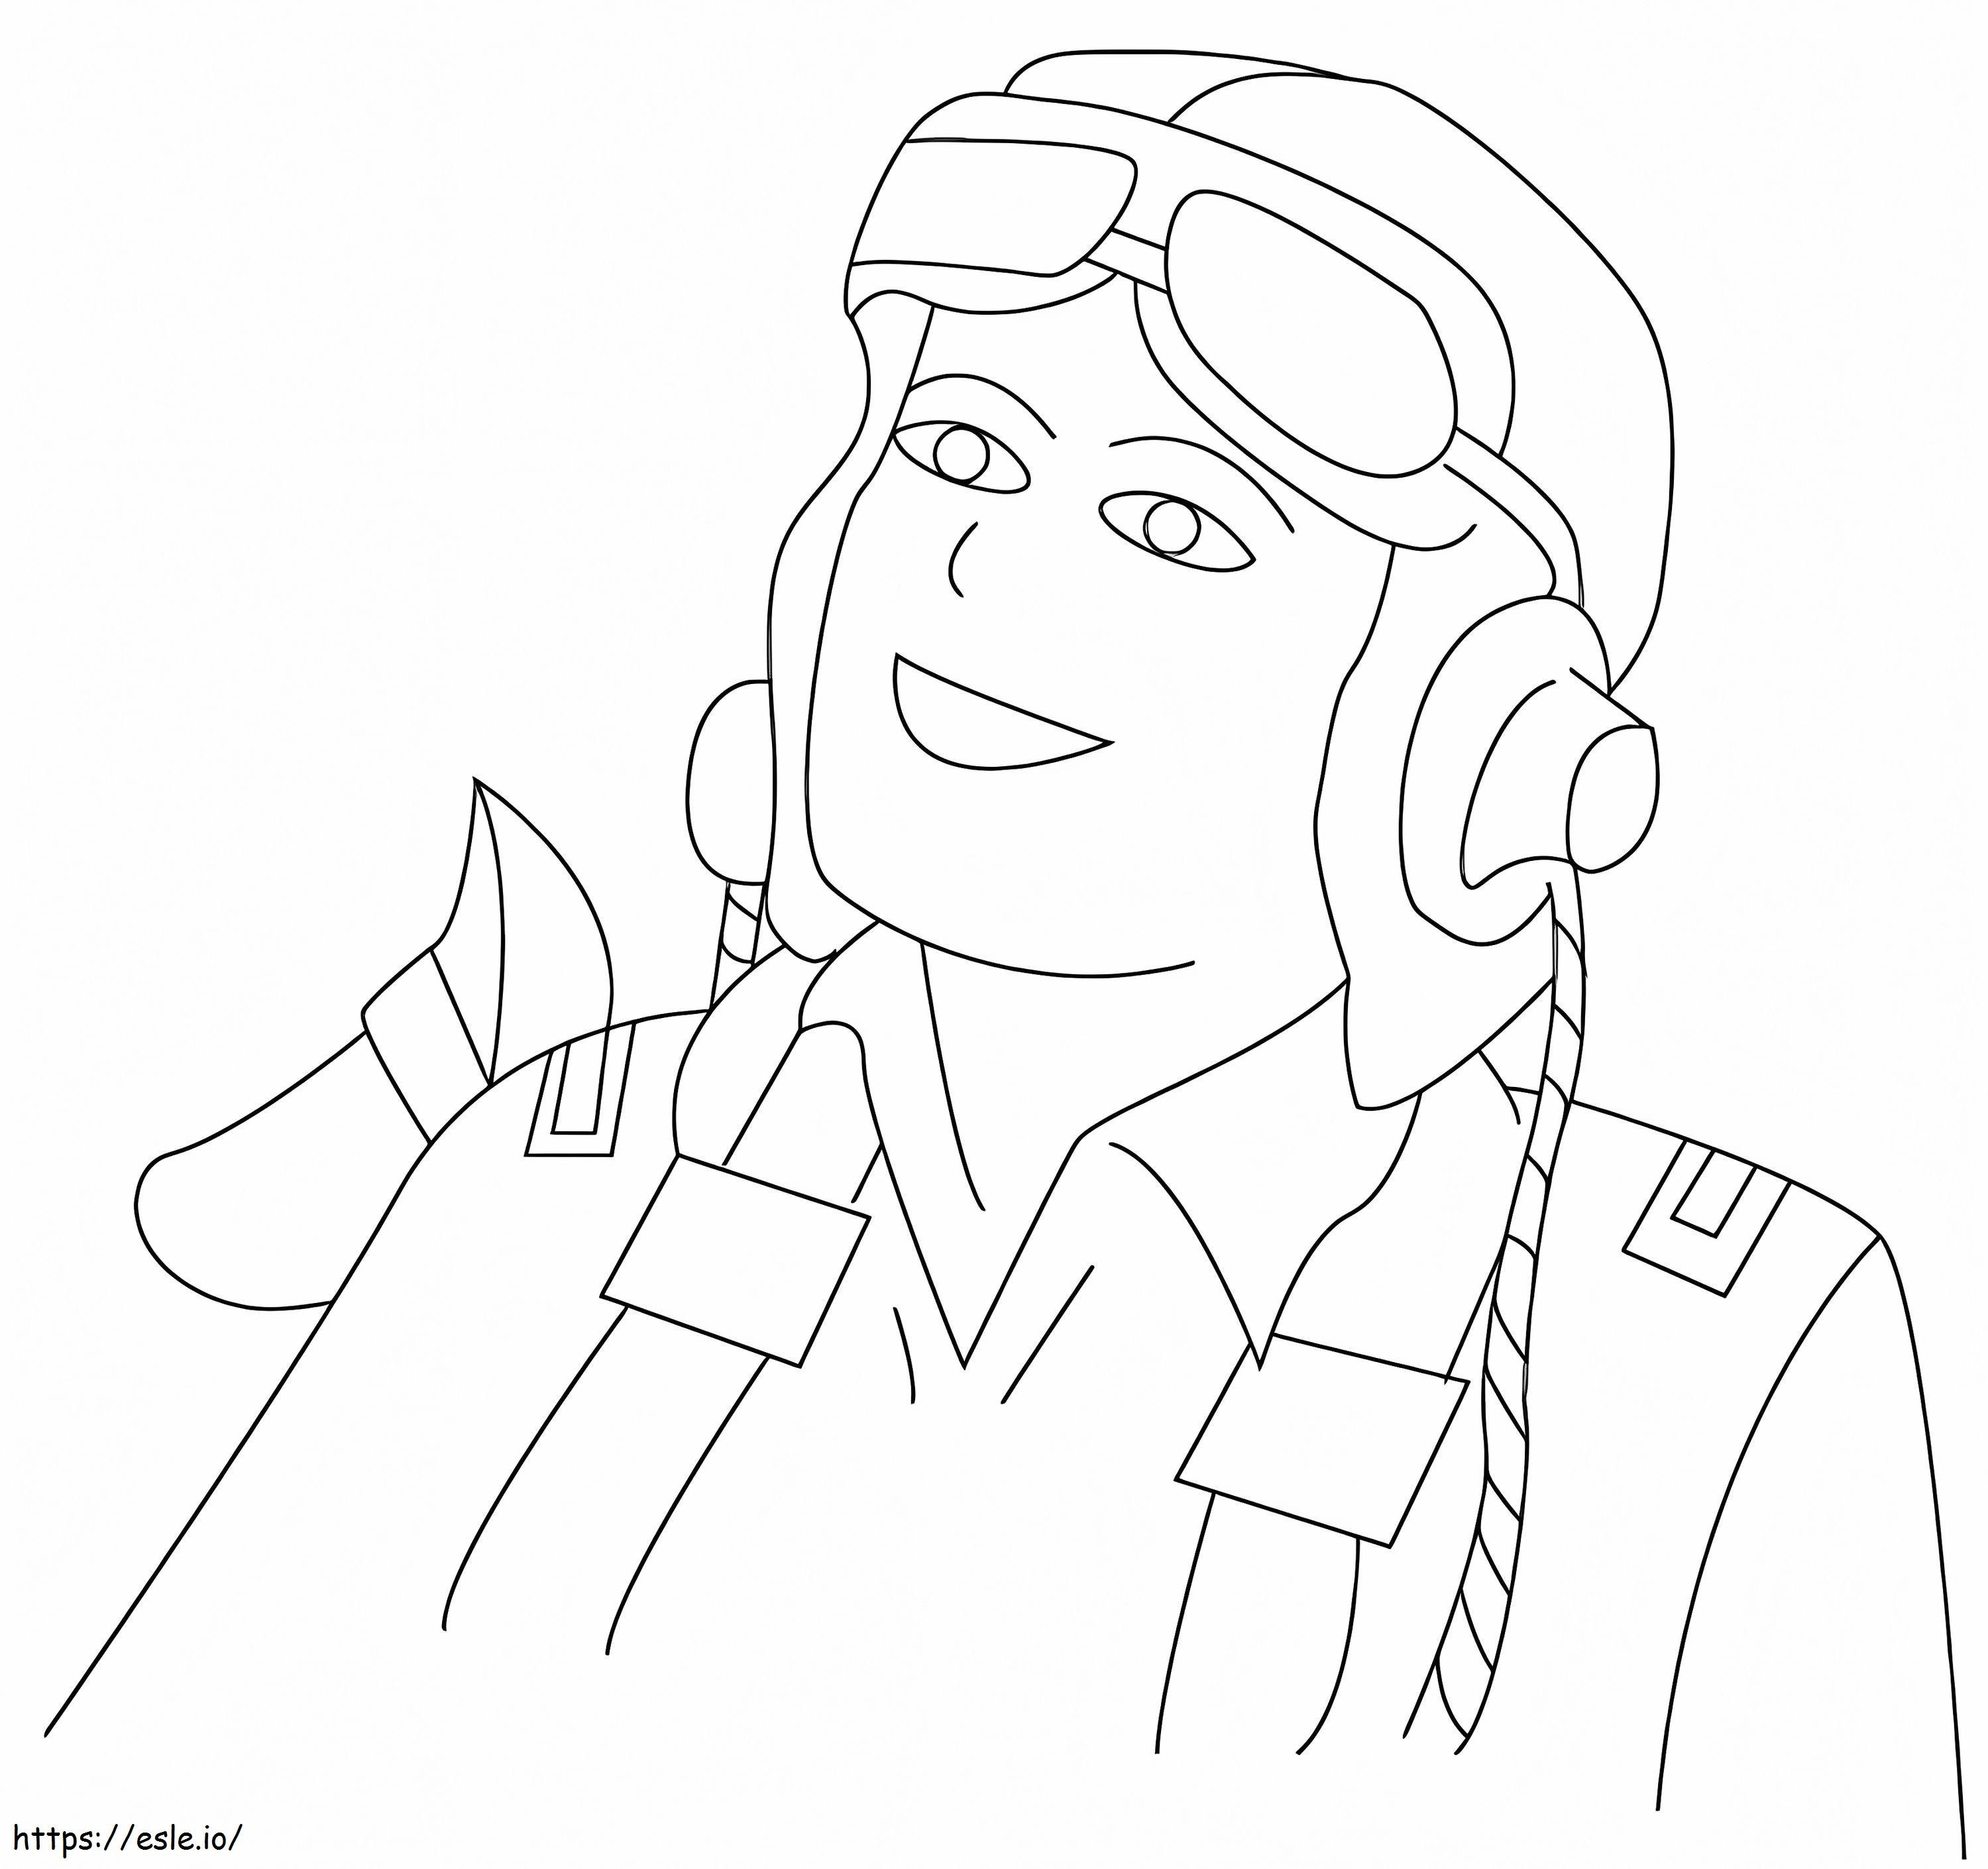 Coloriage Pilote souriant à imprimer dessin